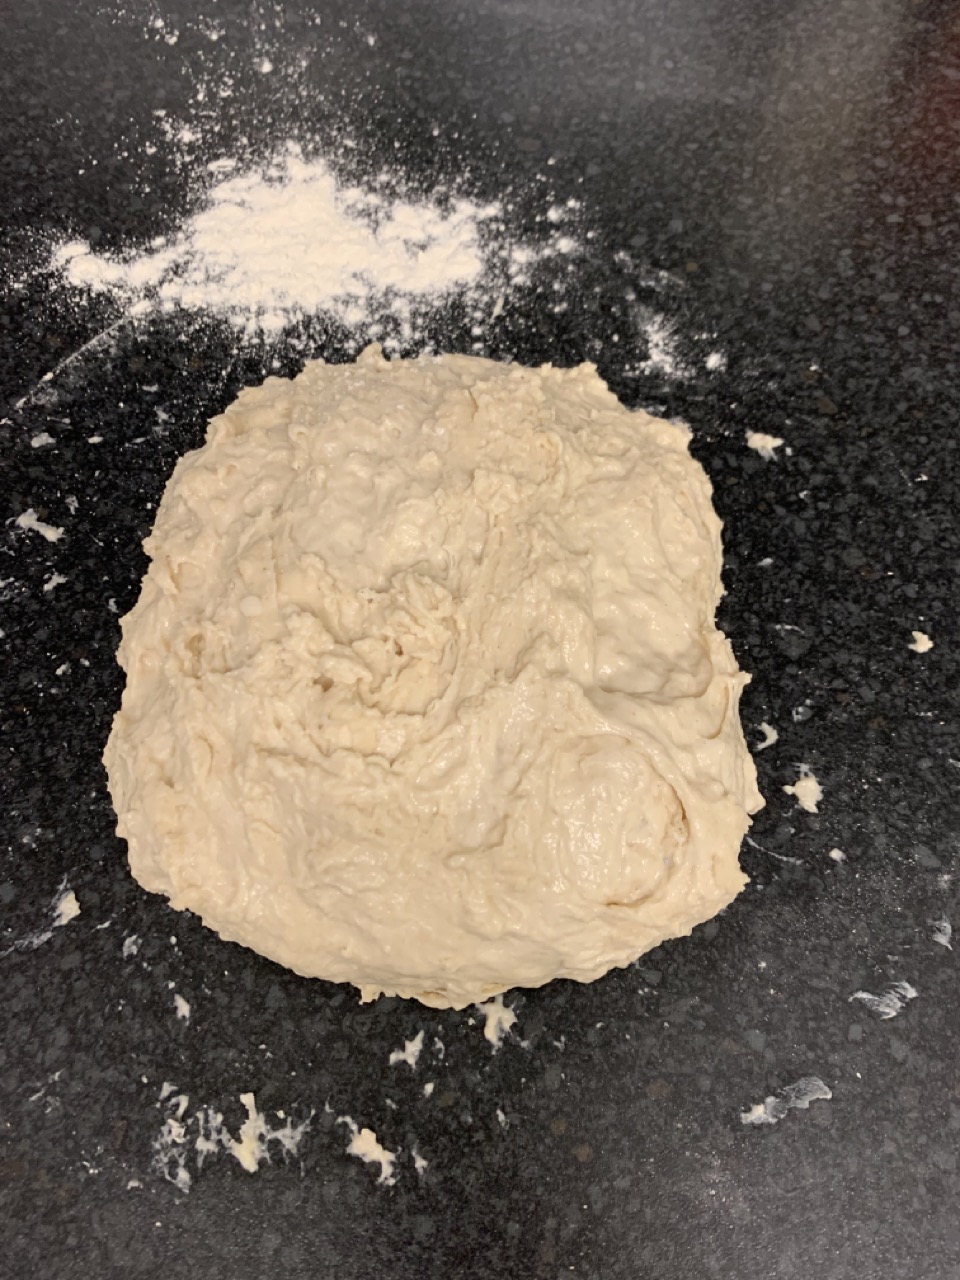 Dough after 20 mins